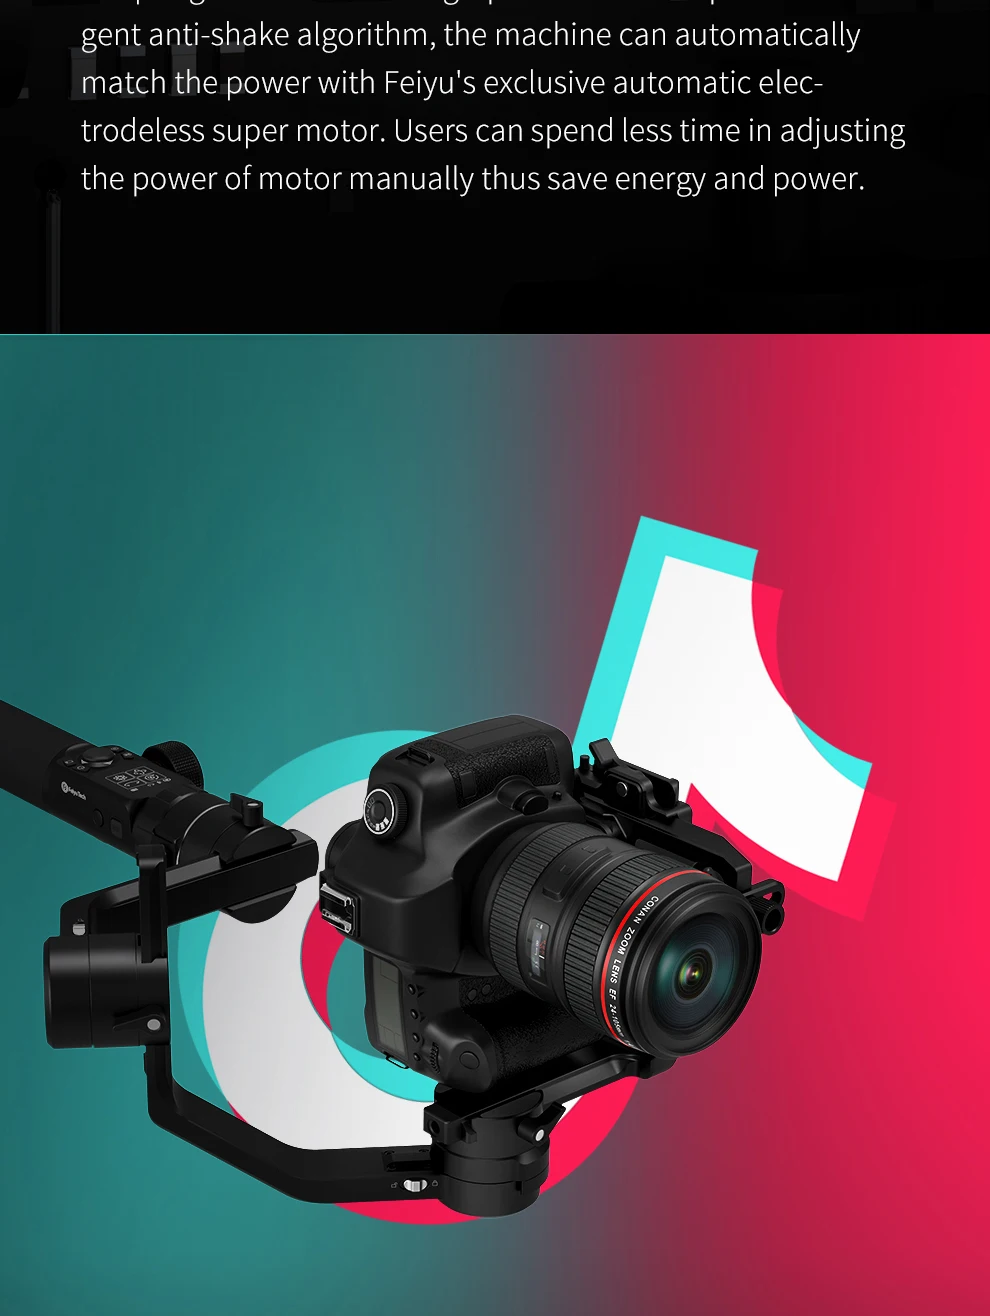 Feiyutech AK4500 3-осевой портативный монопод с шарнирным замком для sony Panasonic цифровой зеркальной камеры Canon Nikon DSLR Камера стабилизатор комплект 4,6 кг грузоподъемность AK4500